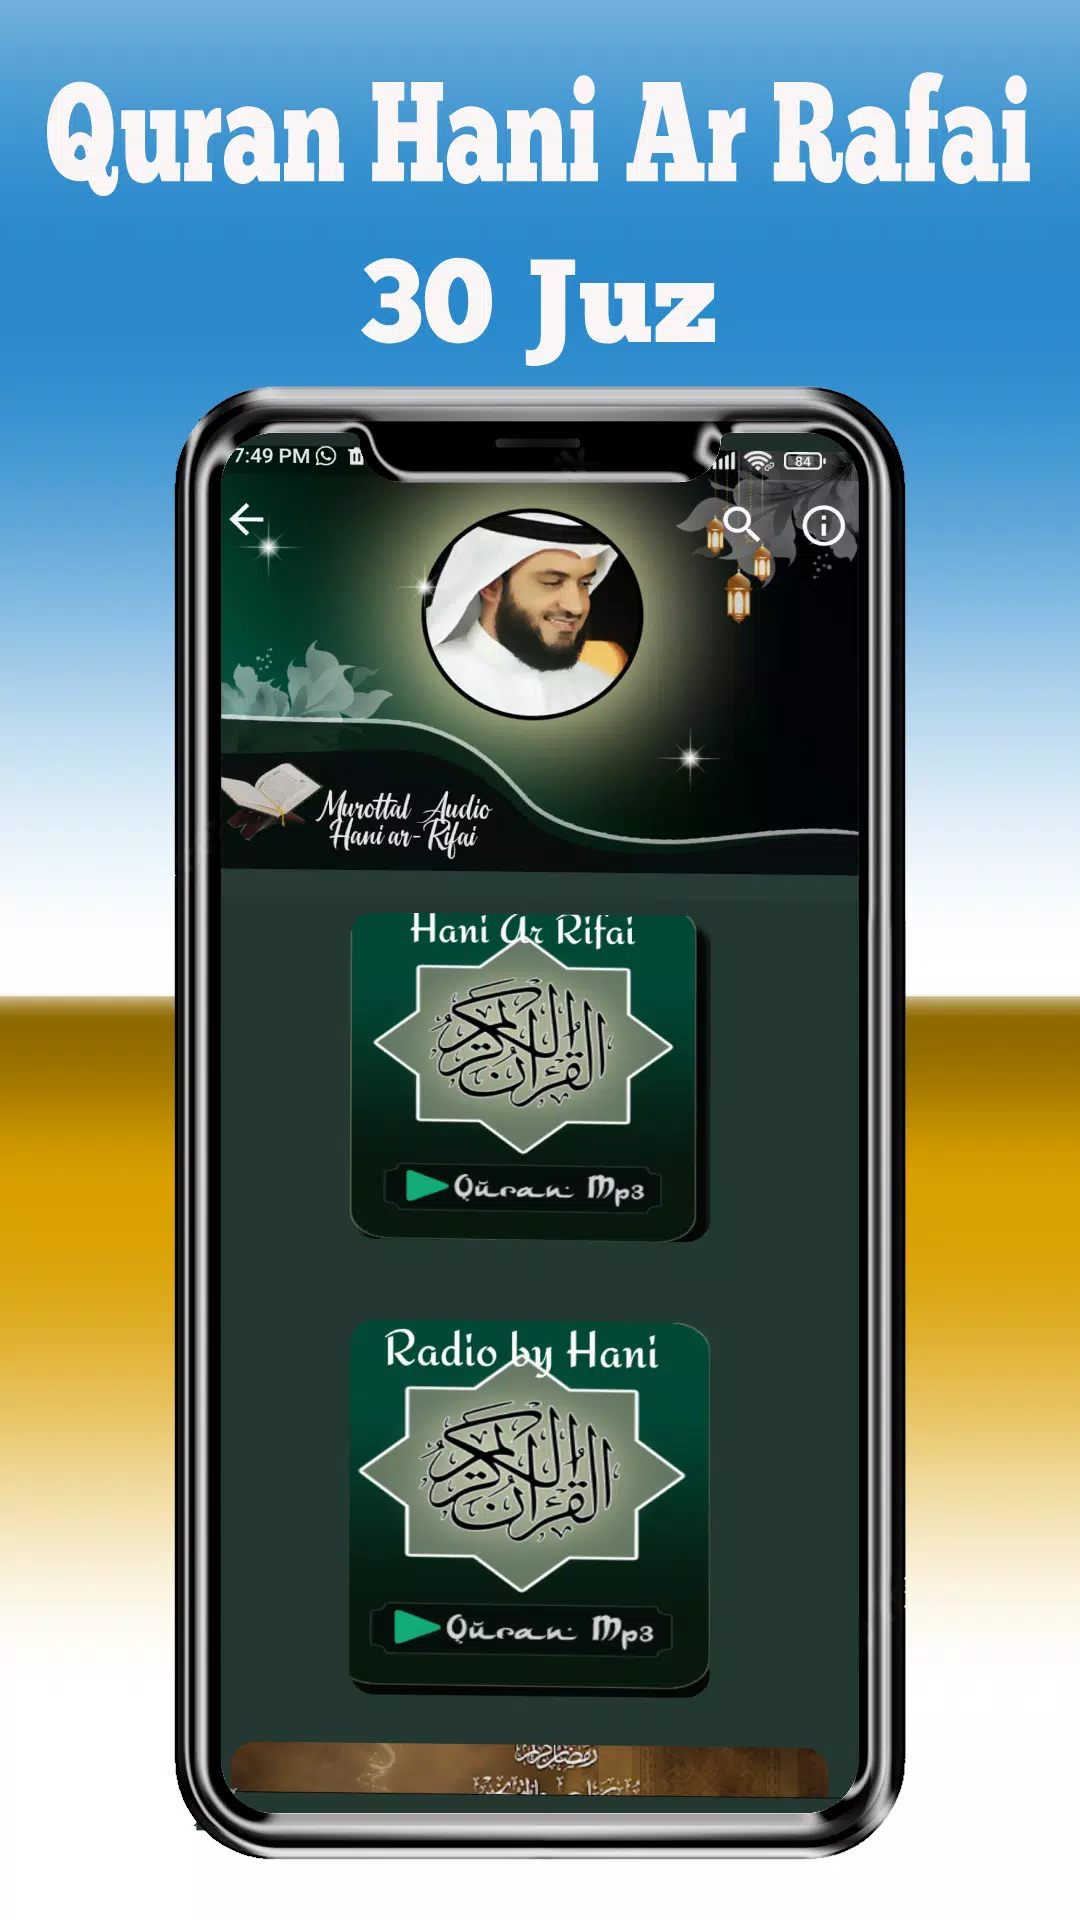 Al Quran by Hani Ar Rifai Mp3 APK pour Android Télécharger